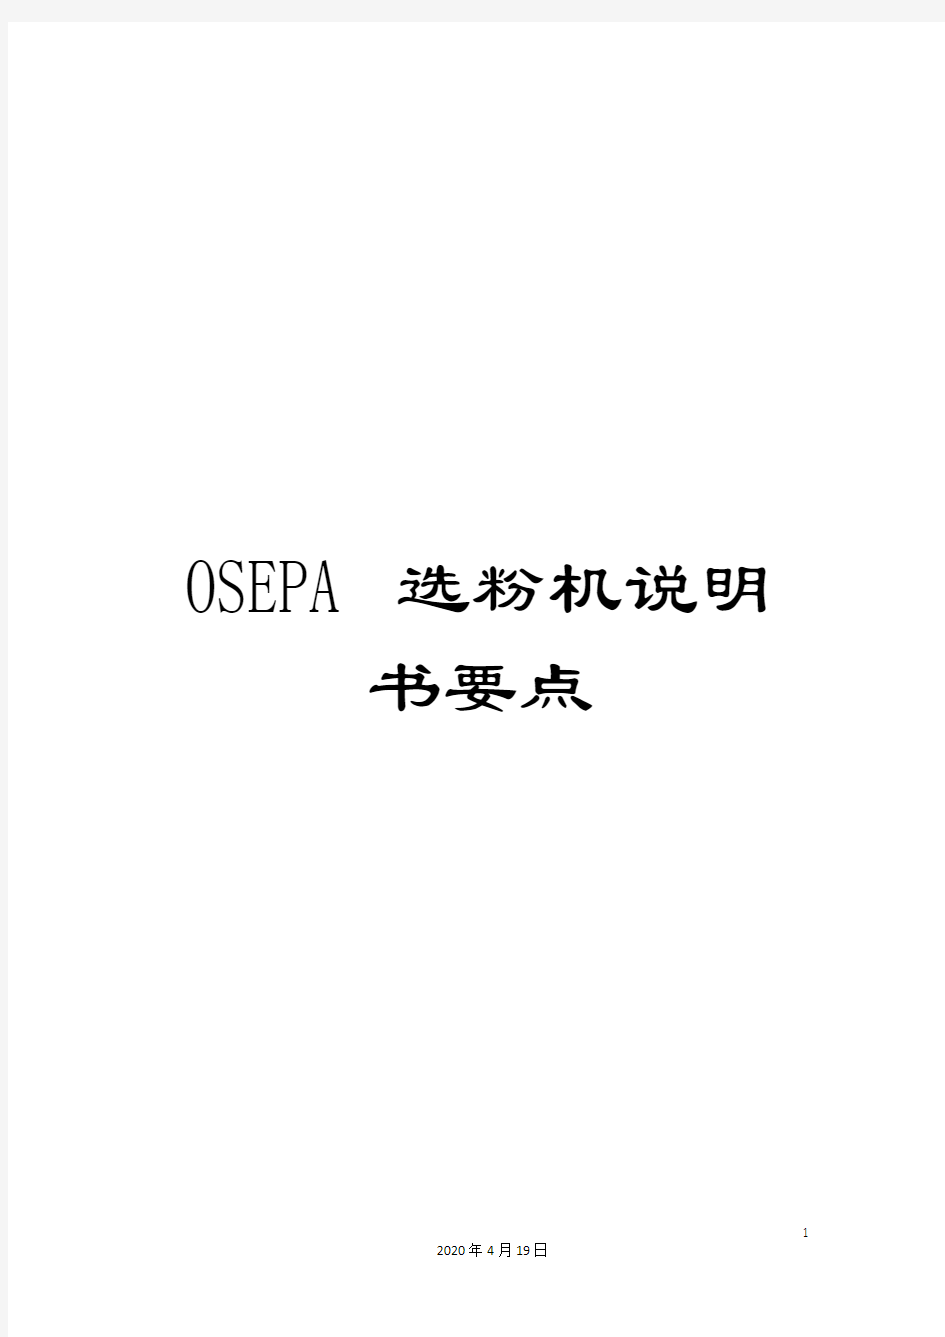 OSEPA选粉机说明书要点